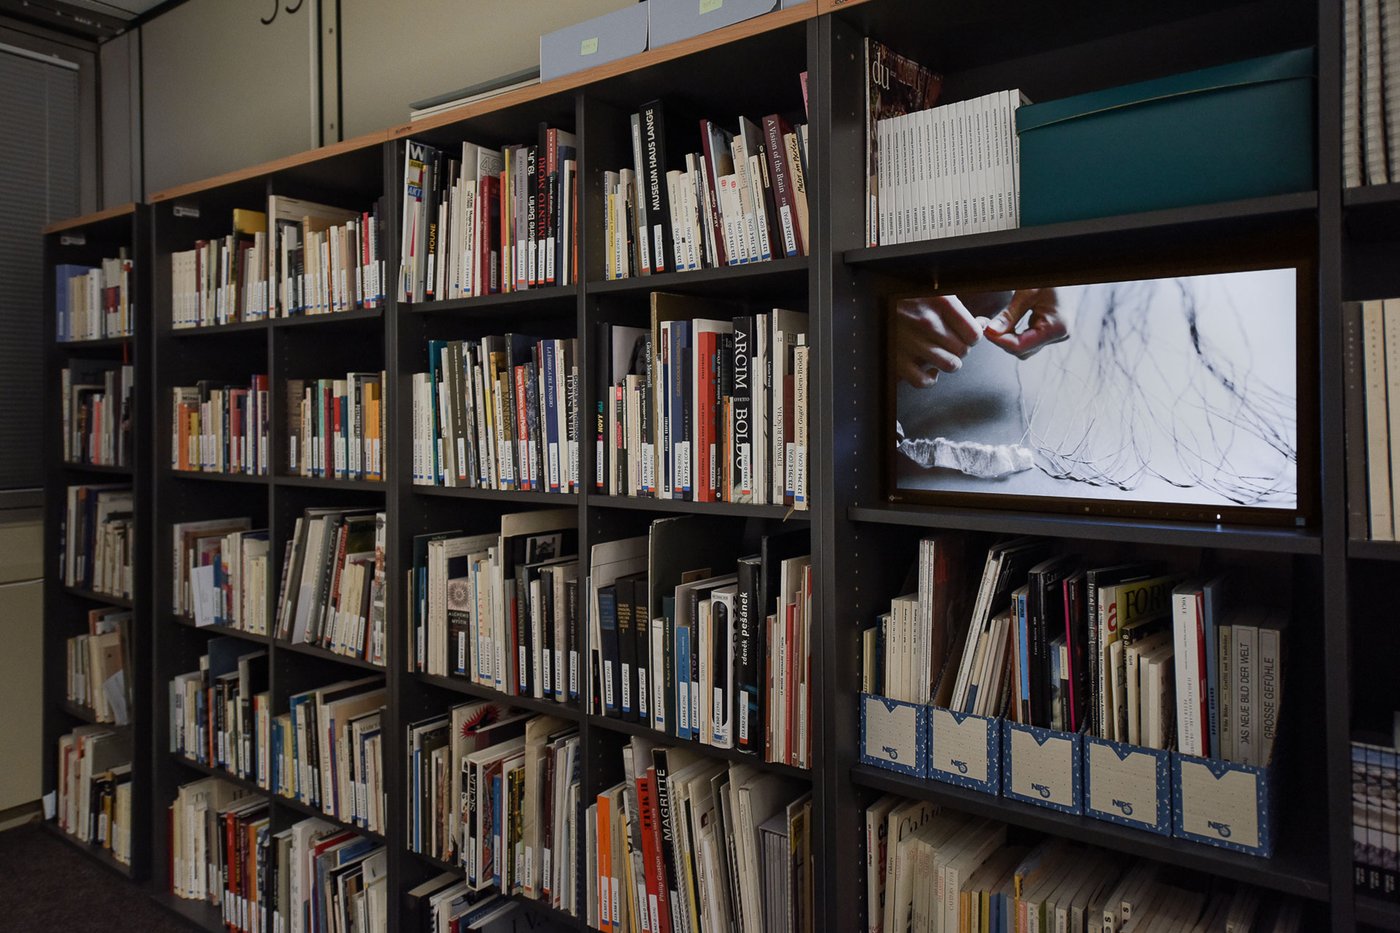 Bücherregal, schräg fotografiert, in einem der Fächer ist ein Monitor zu sehen, auf dem ein Video läuft. Darauf sind Hände zu sehen, die einen Papierfaden knüpfen.